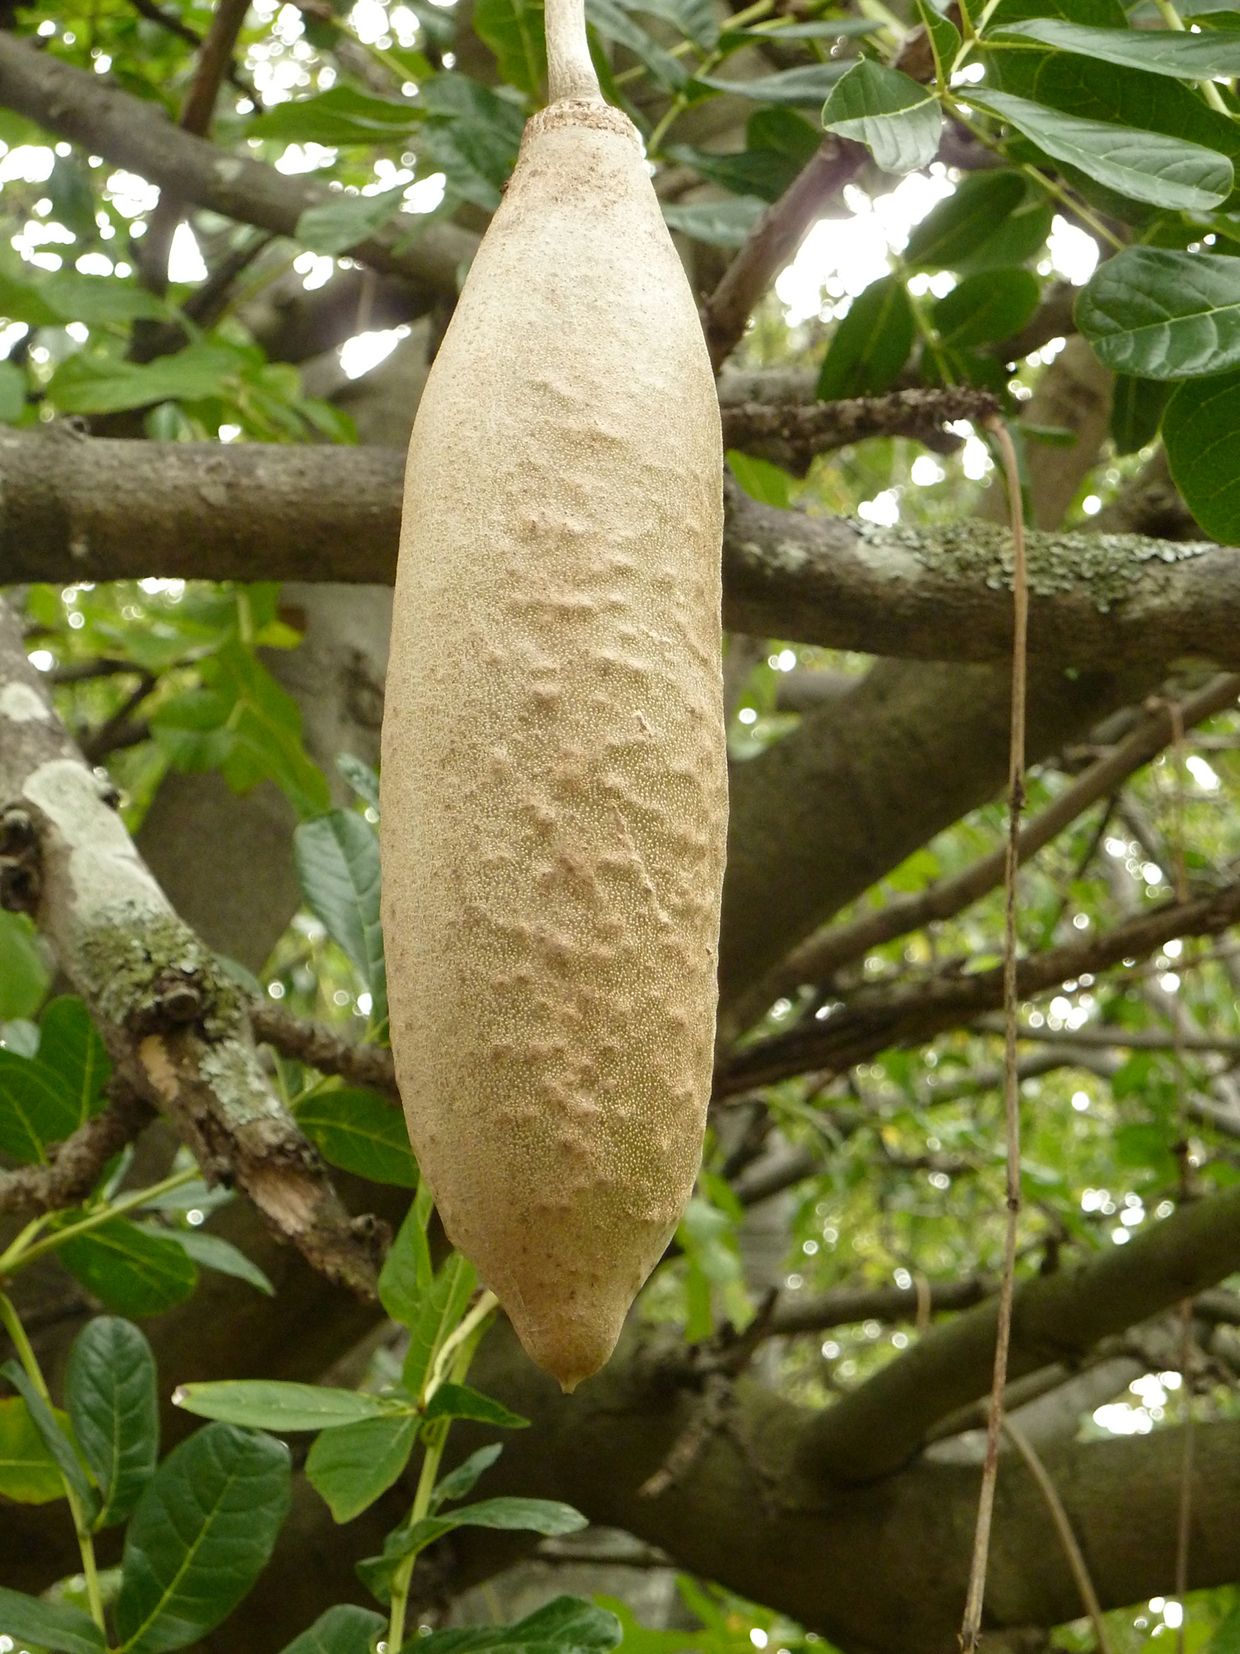 Seedeo® Leberwurstbaum (Kigelia pinnata var. Africana) 10 Samen